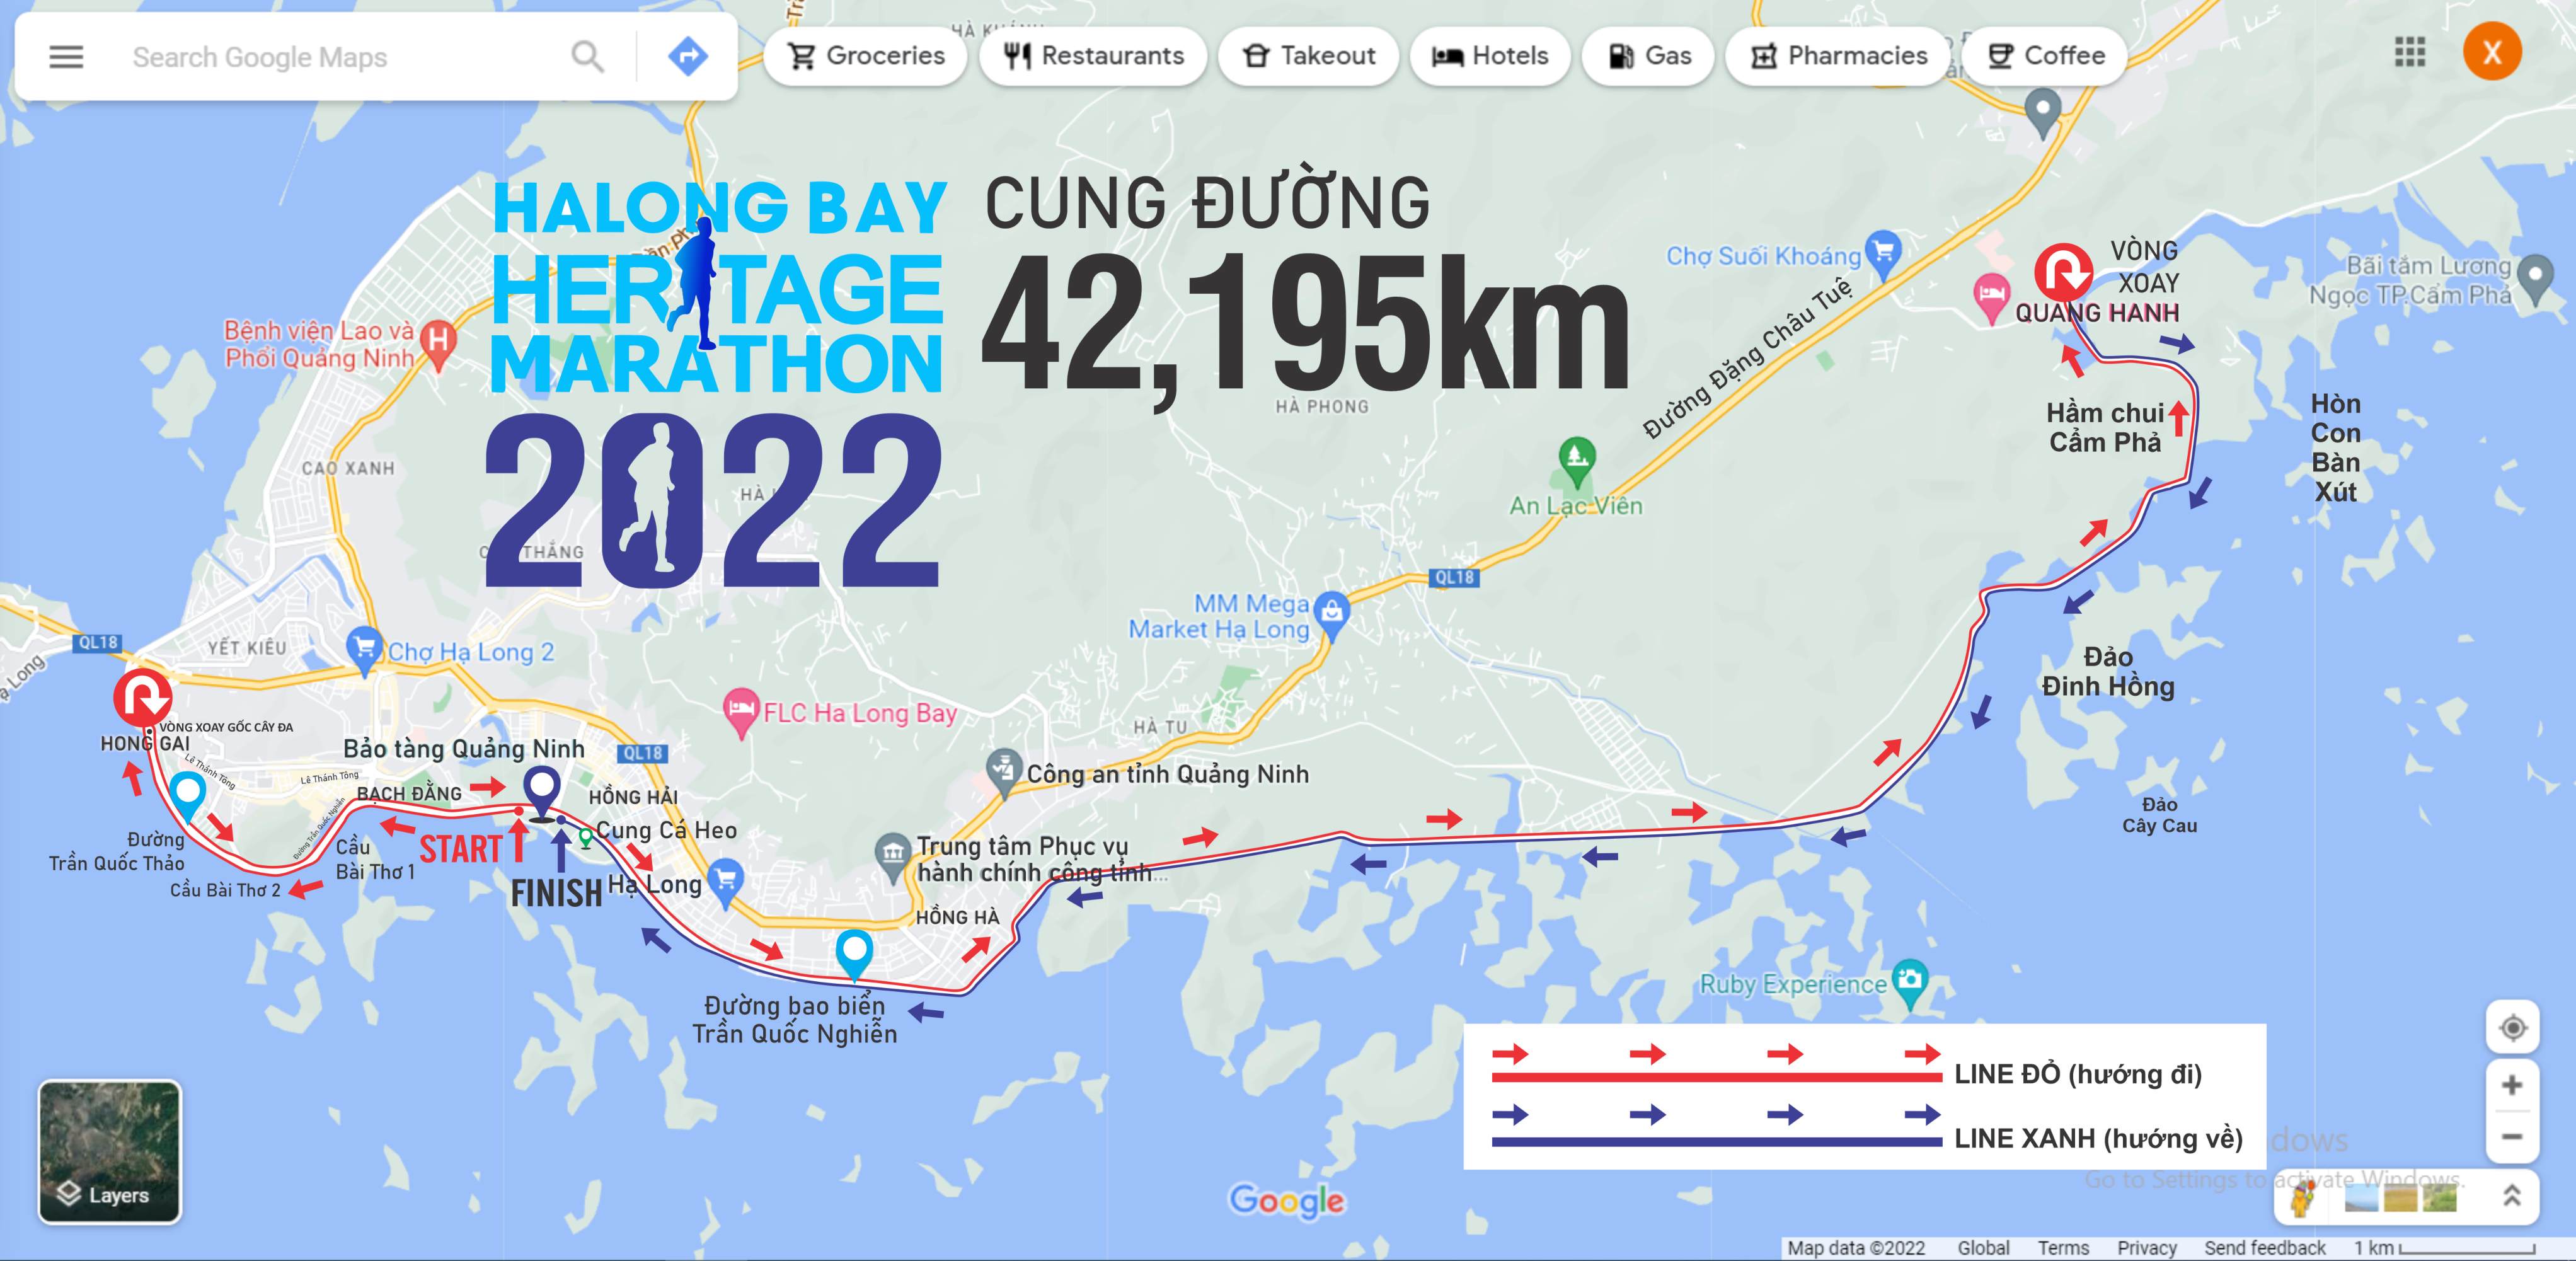 Halong Bay Heritage Marathon 2022: New Unique Route